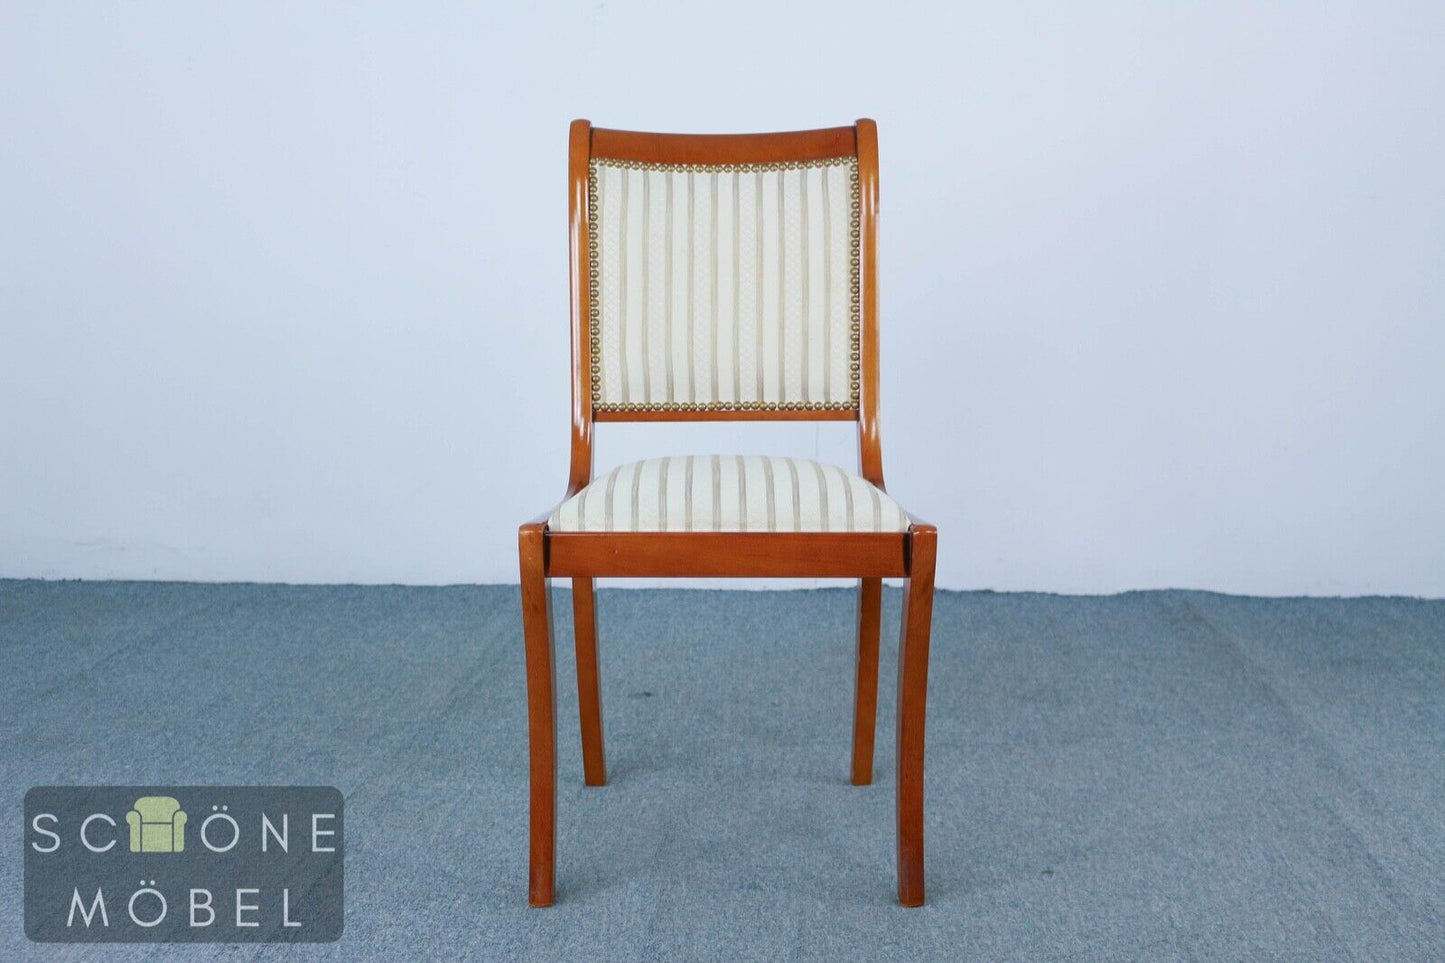 2x Esszimmerstühle Stühle Englisches Design Antik Stil Stuhl Essstuhl Chair